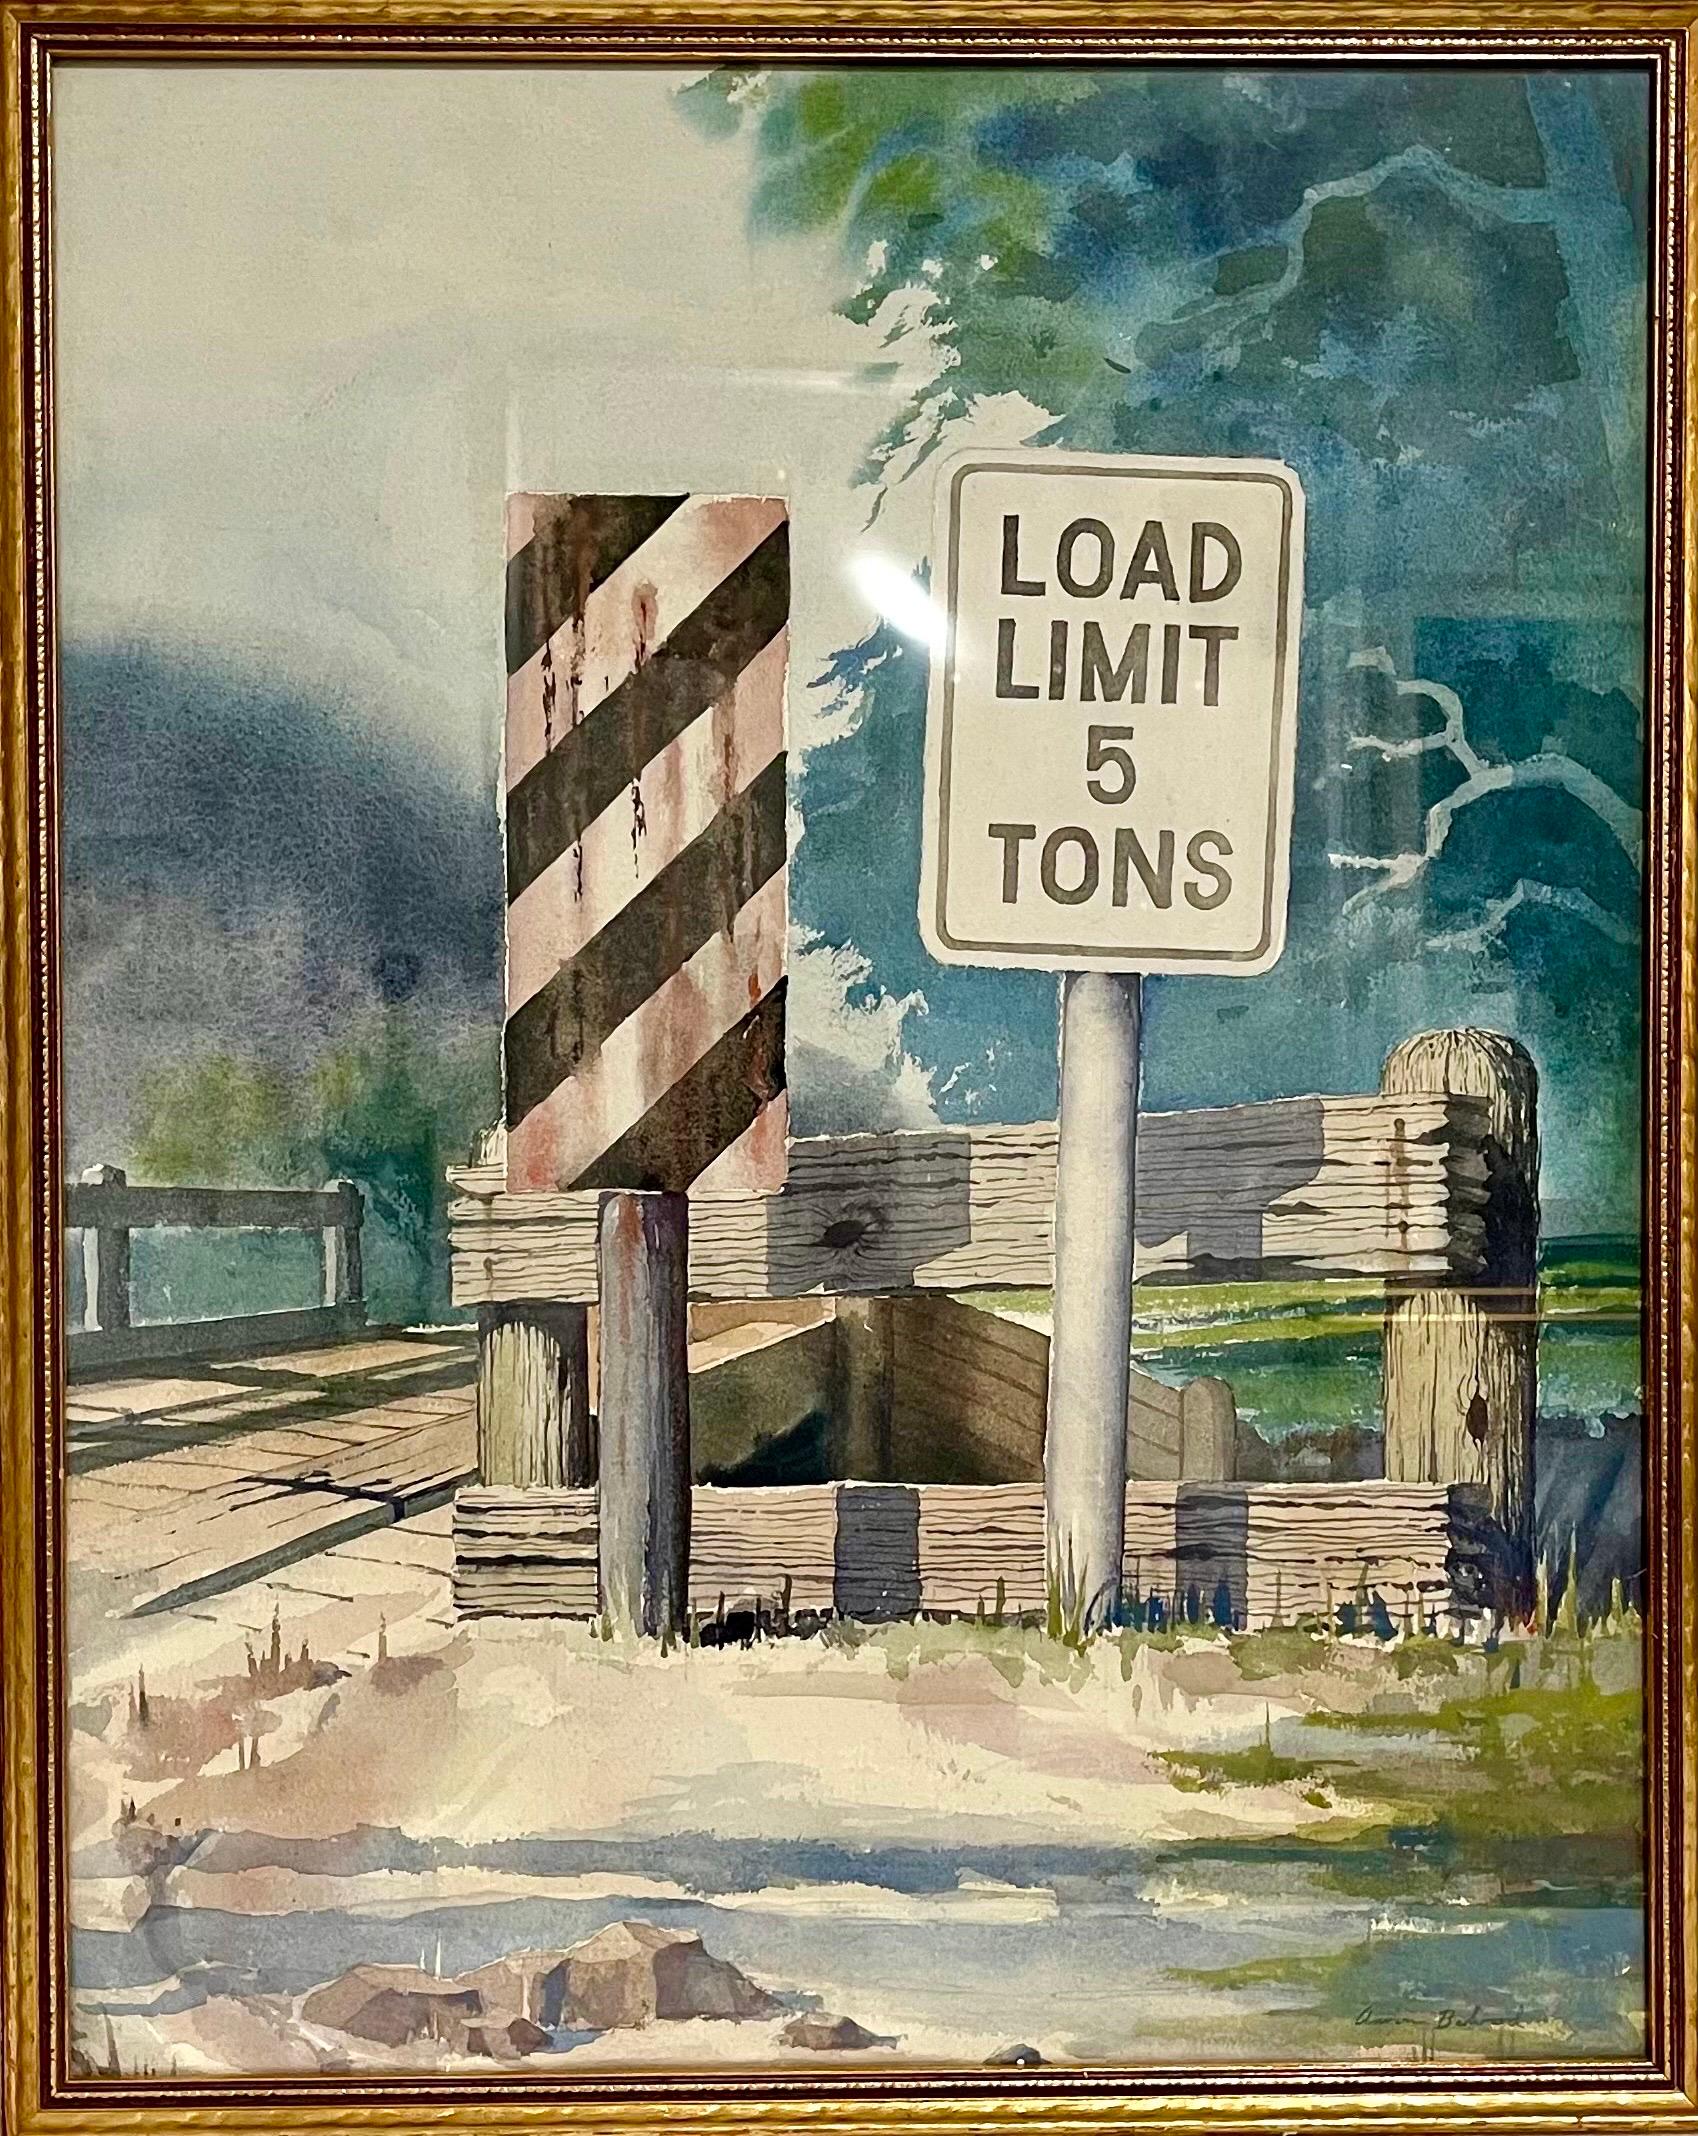 Aaron Bohrod (1907-1992)
Aufgeführt Wisconsin WPA Amerikanischer Künstler 
Original-Aquarell-Gemälde
Handsigniert "Lastgrenze Brücke" 
Abmessungen: 24 "x18" Zoll

Aaron Bohrod (1907 - 1992) war ein amerikanischer Künstler, der vor allem für seine